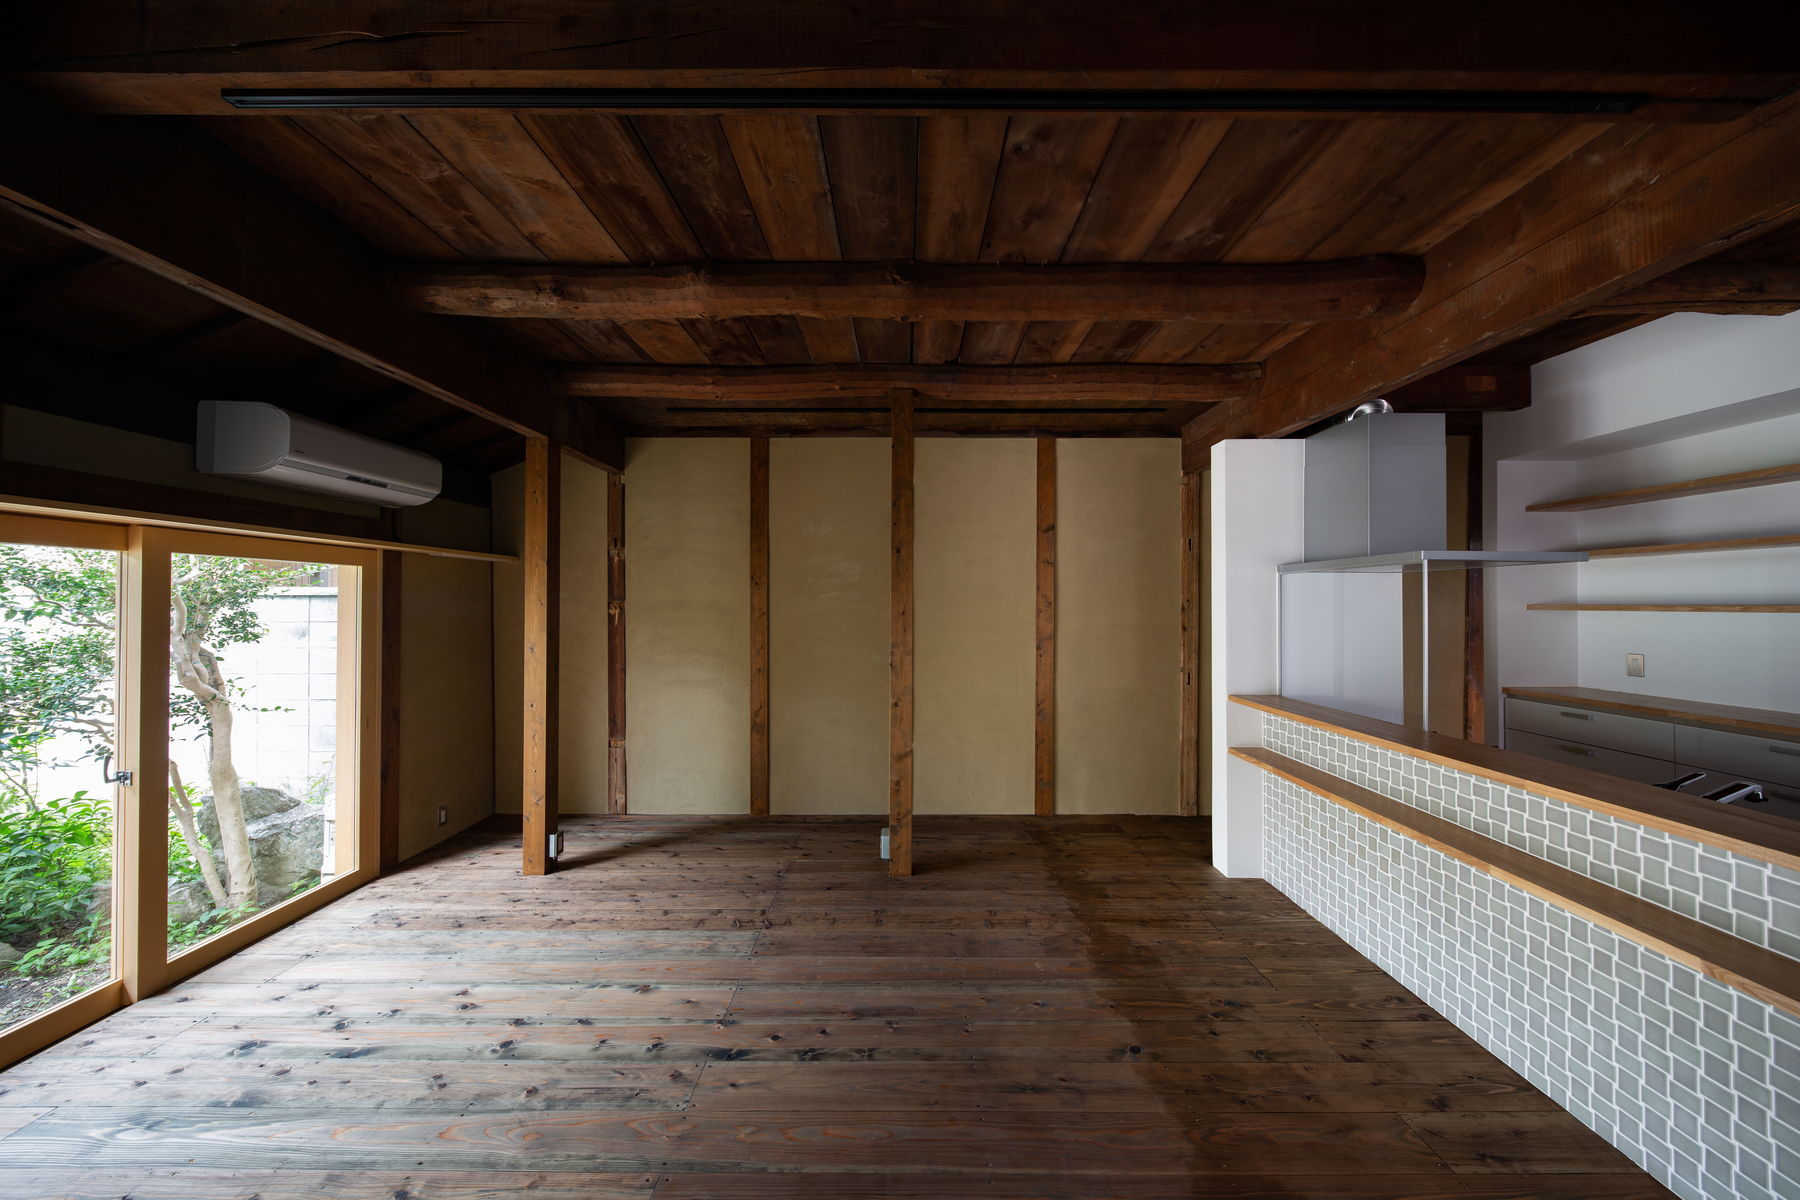 １階のへや。床は杉足場板を施主様塗装。壁は土壁塗の真壁のペンキ塗の大壁を組み合わせ。天井は既存のゴロンボ梁と荒板。